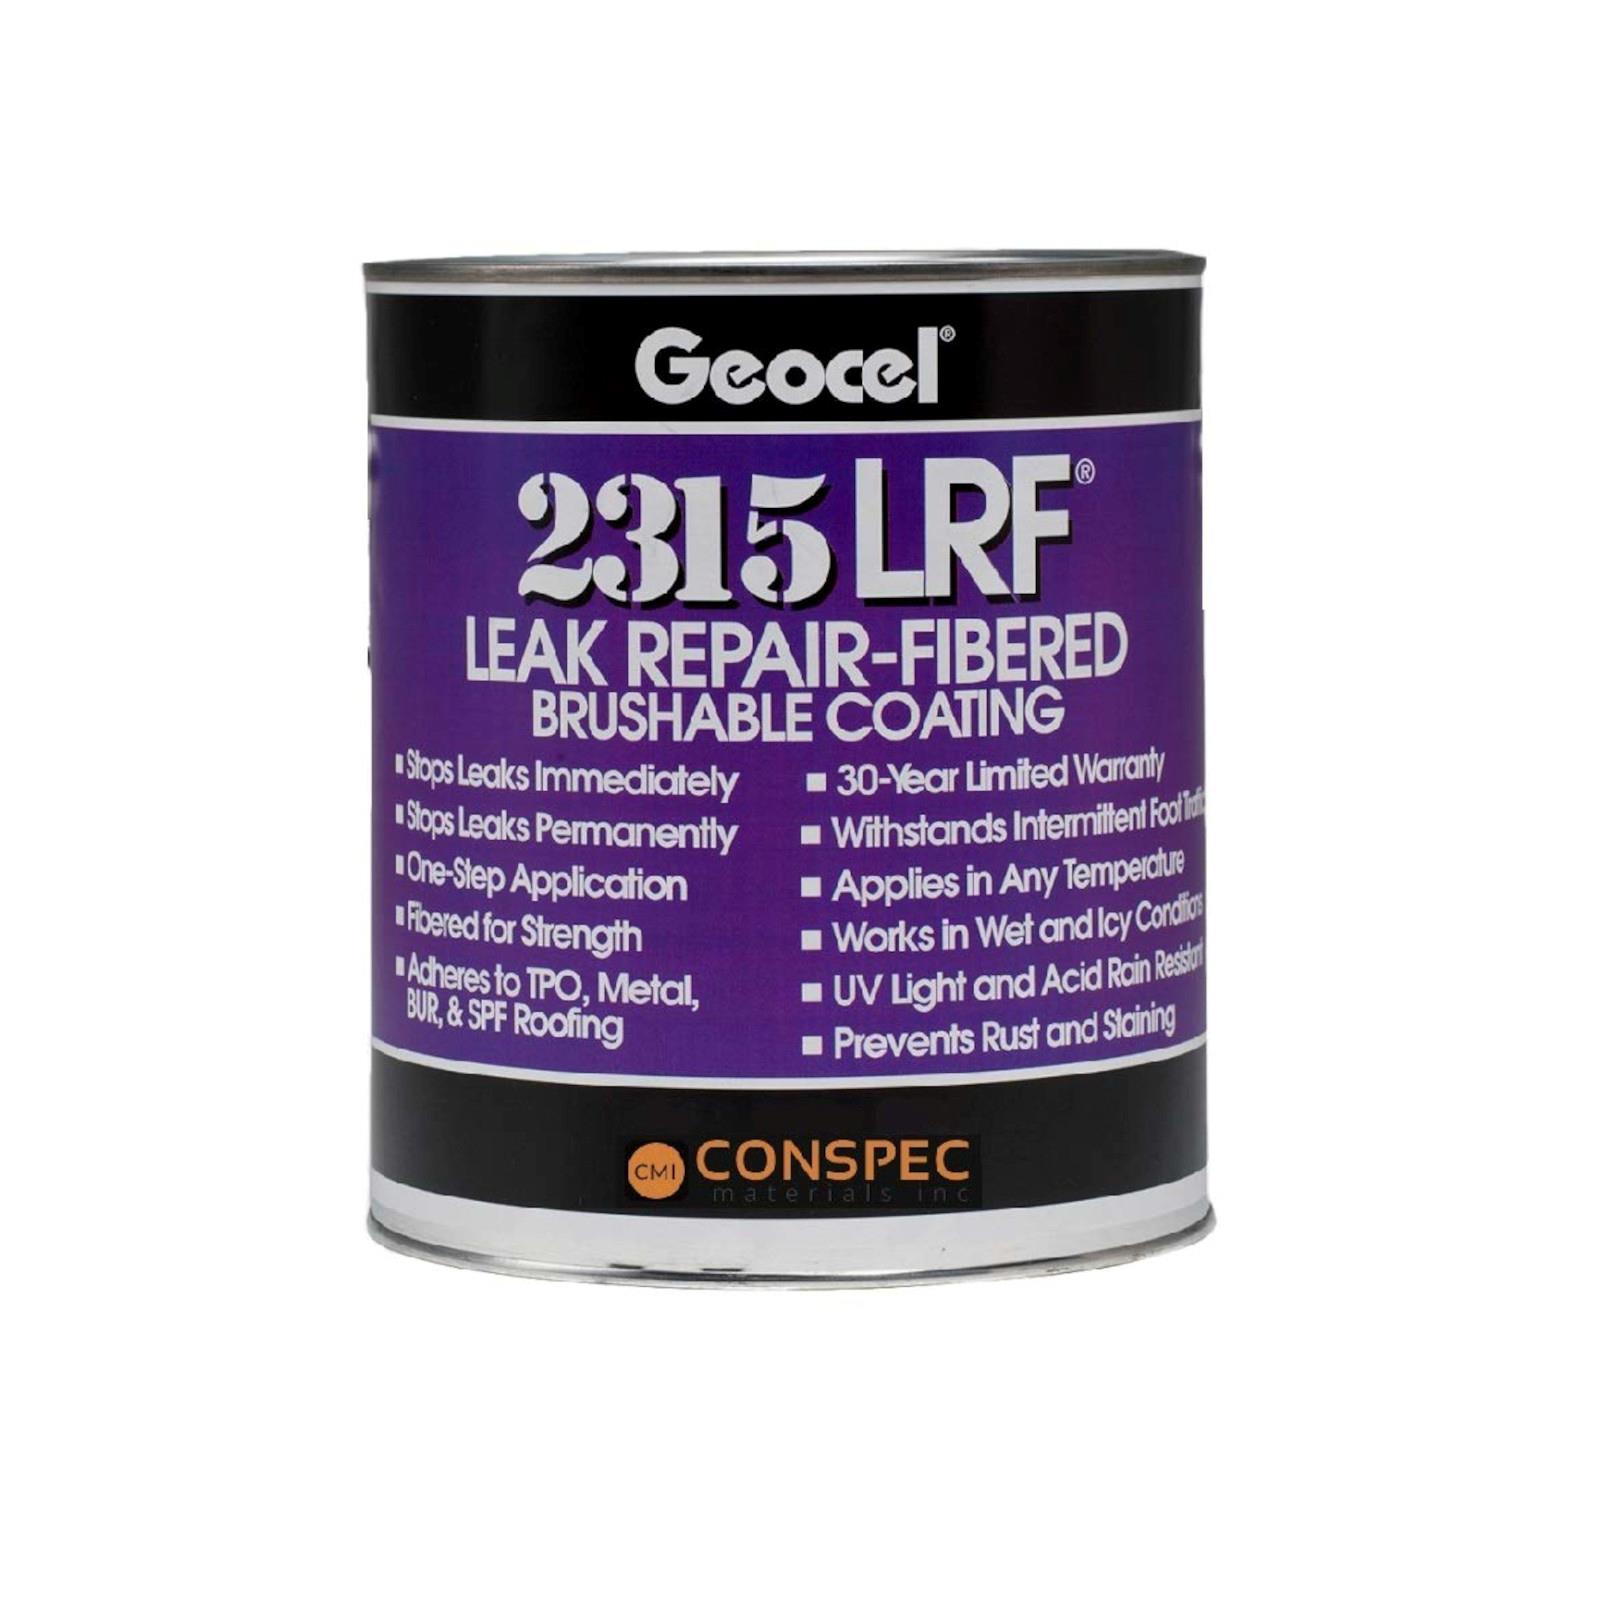 Geocel 2315LRF Leak Repair-Fibered Brushable Coatings